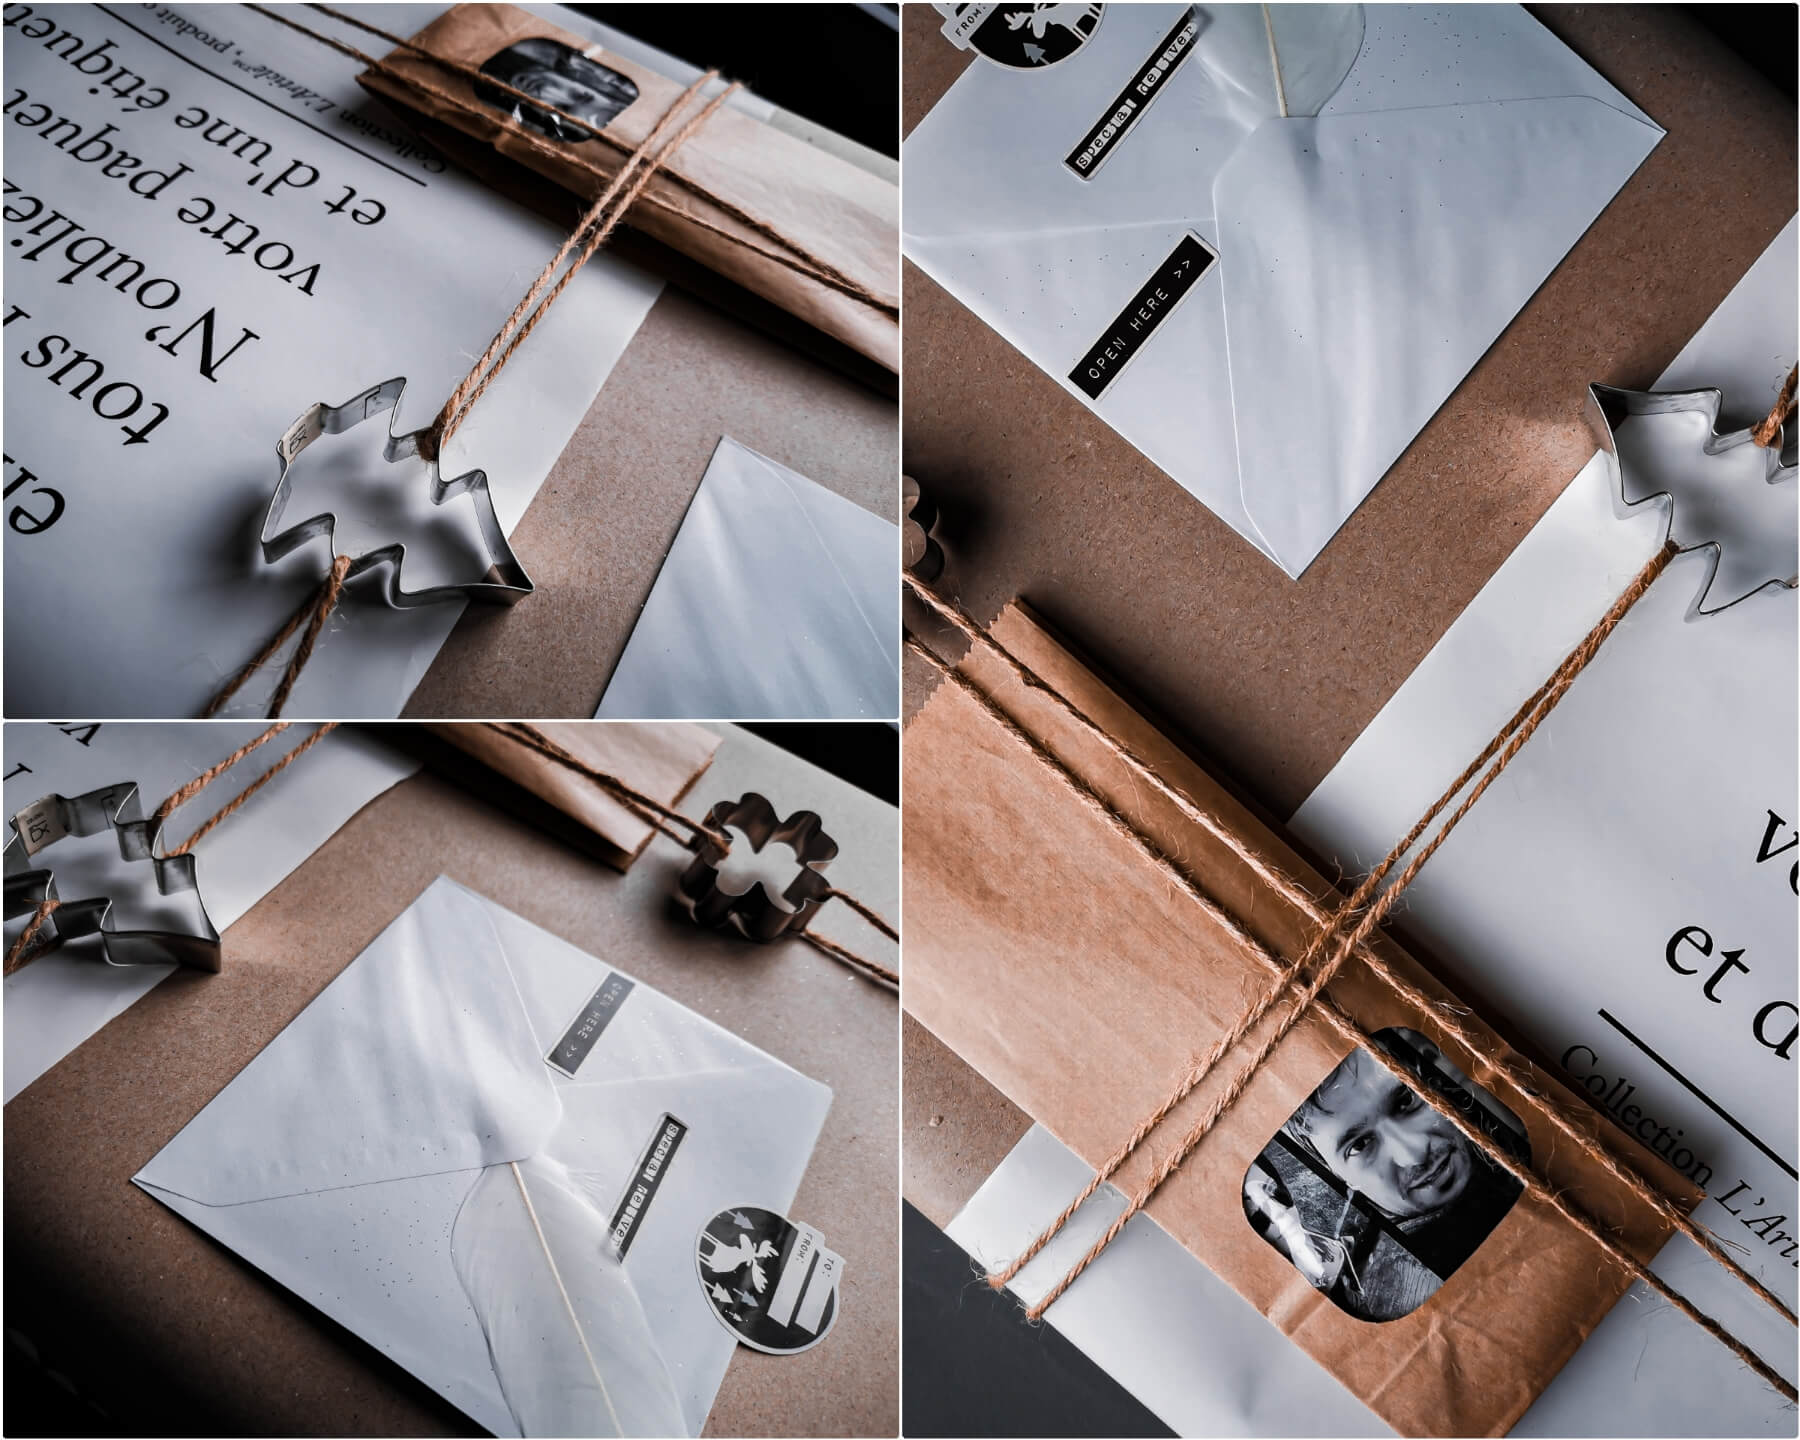 inCollage 20191208 170729642 resized 20191208 050953123 1 - Geschenke verpacken: 11 kreative Tipps zum Selbermachen